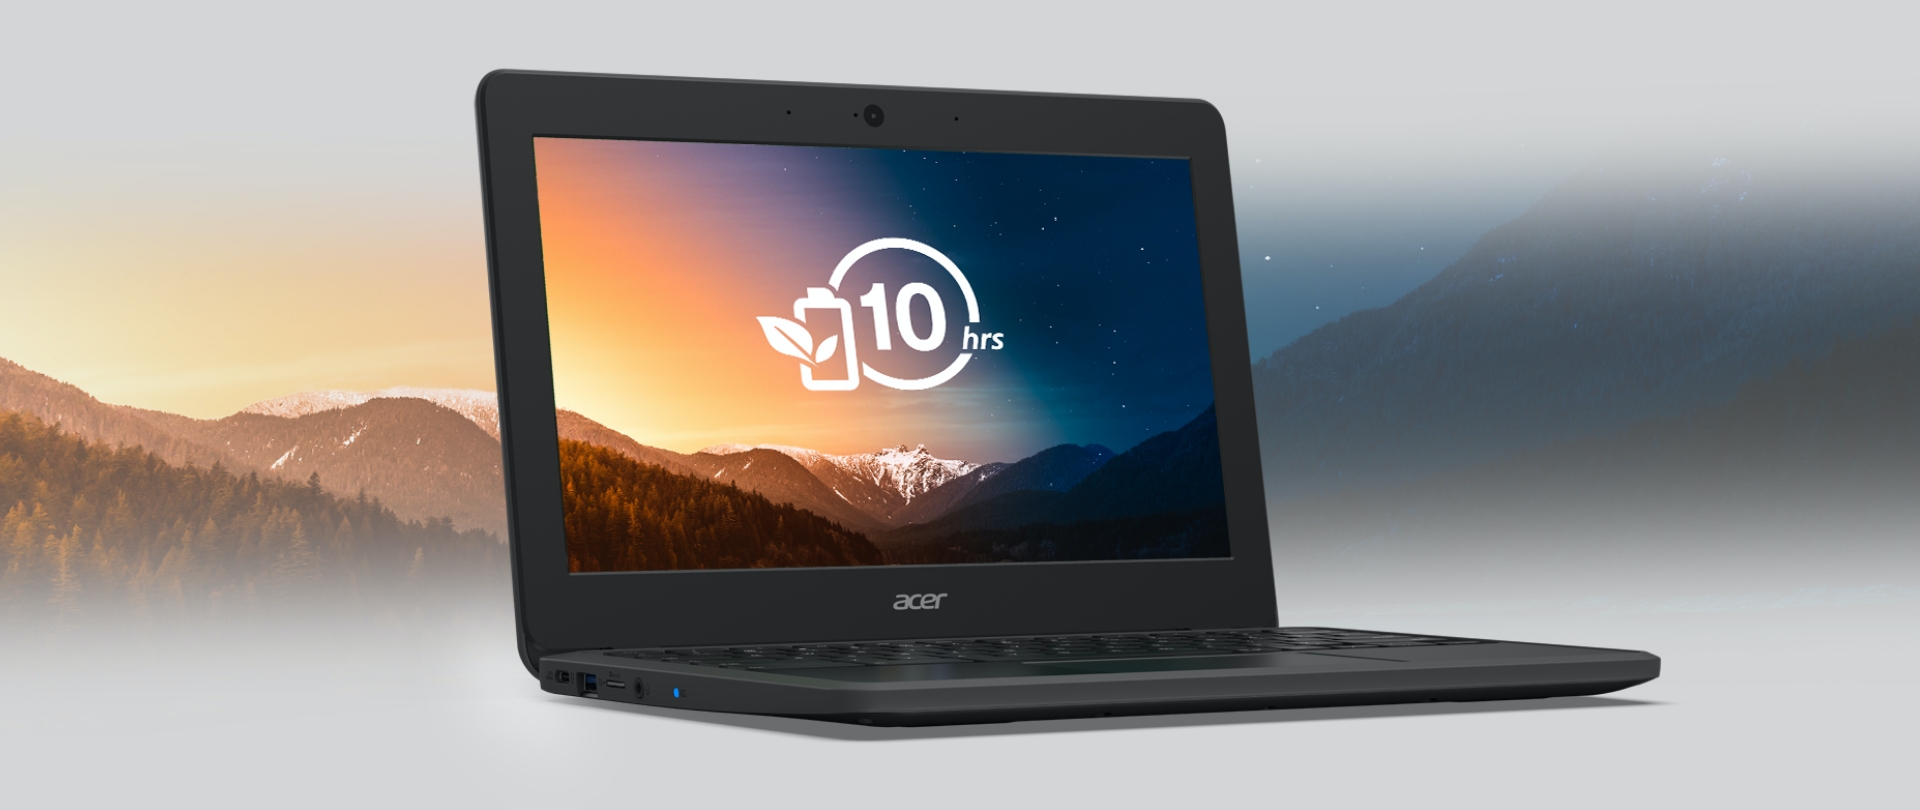 Acer lança no Brasil o novo Chromebook 511; veja as especificações técnicas